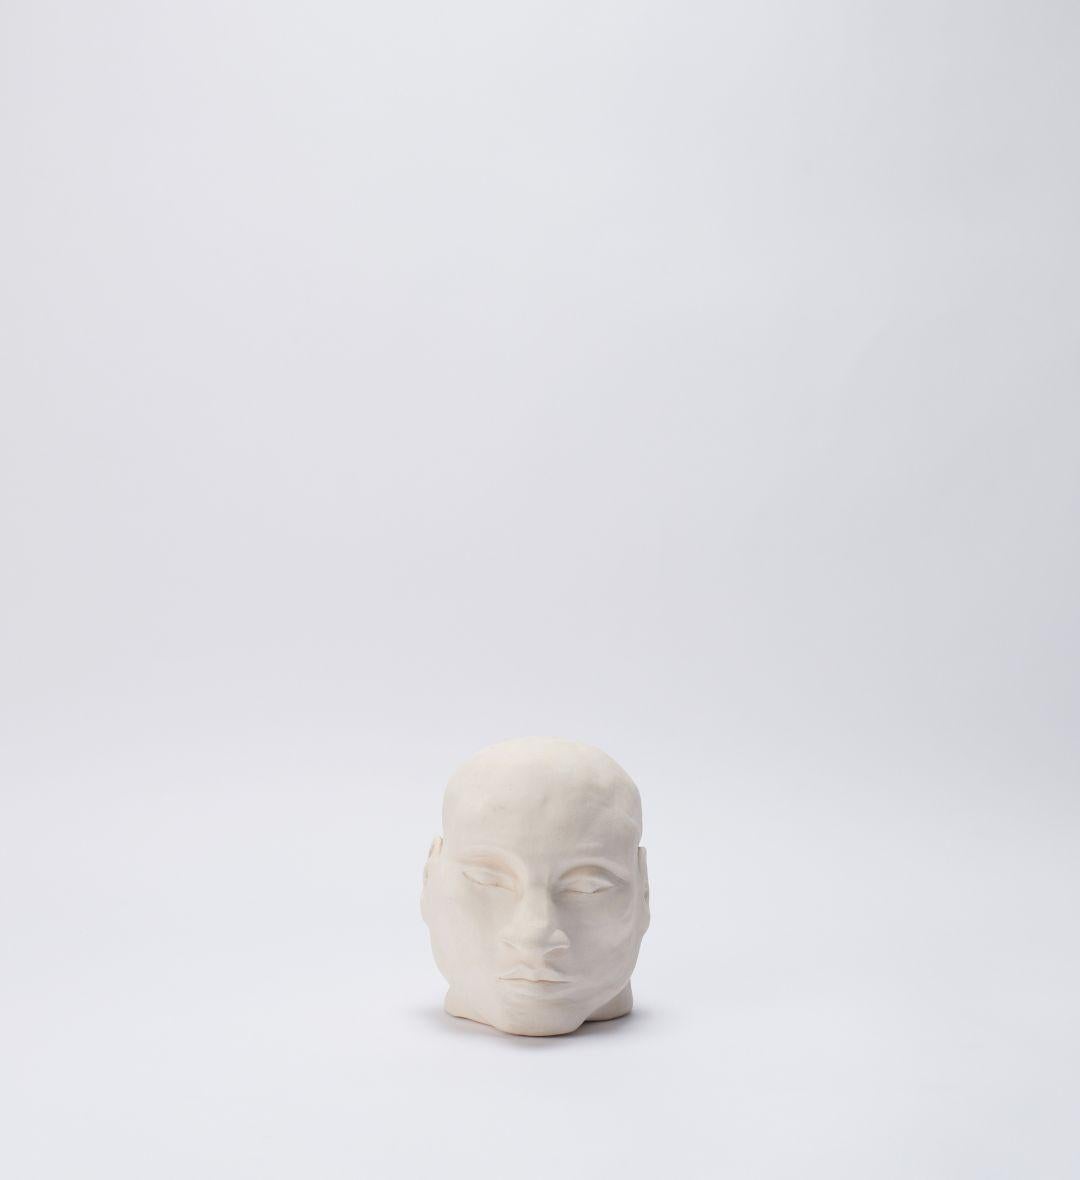 Ori 01 Skulptur von Joana Kieppe
Einzigartiges Stück.
Abmessungen: T 16 x B 11 x H 15 cm.
MATERIALIEN: Weißer Hochtemperaturton.

Alle Stücke werden aus hochwertigem brasilianischem Wildton hergestellt, die Hochtemperaturstücke werden bei 1220 Grad